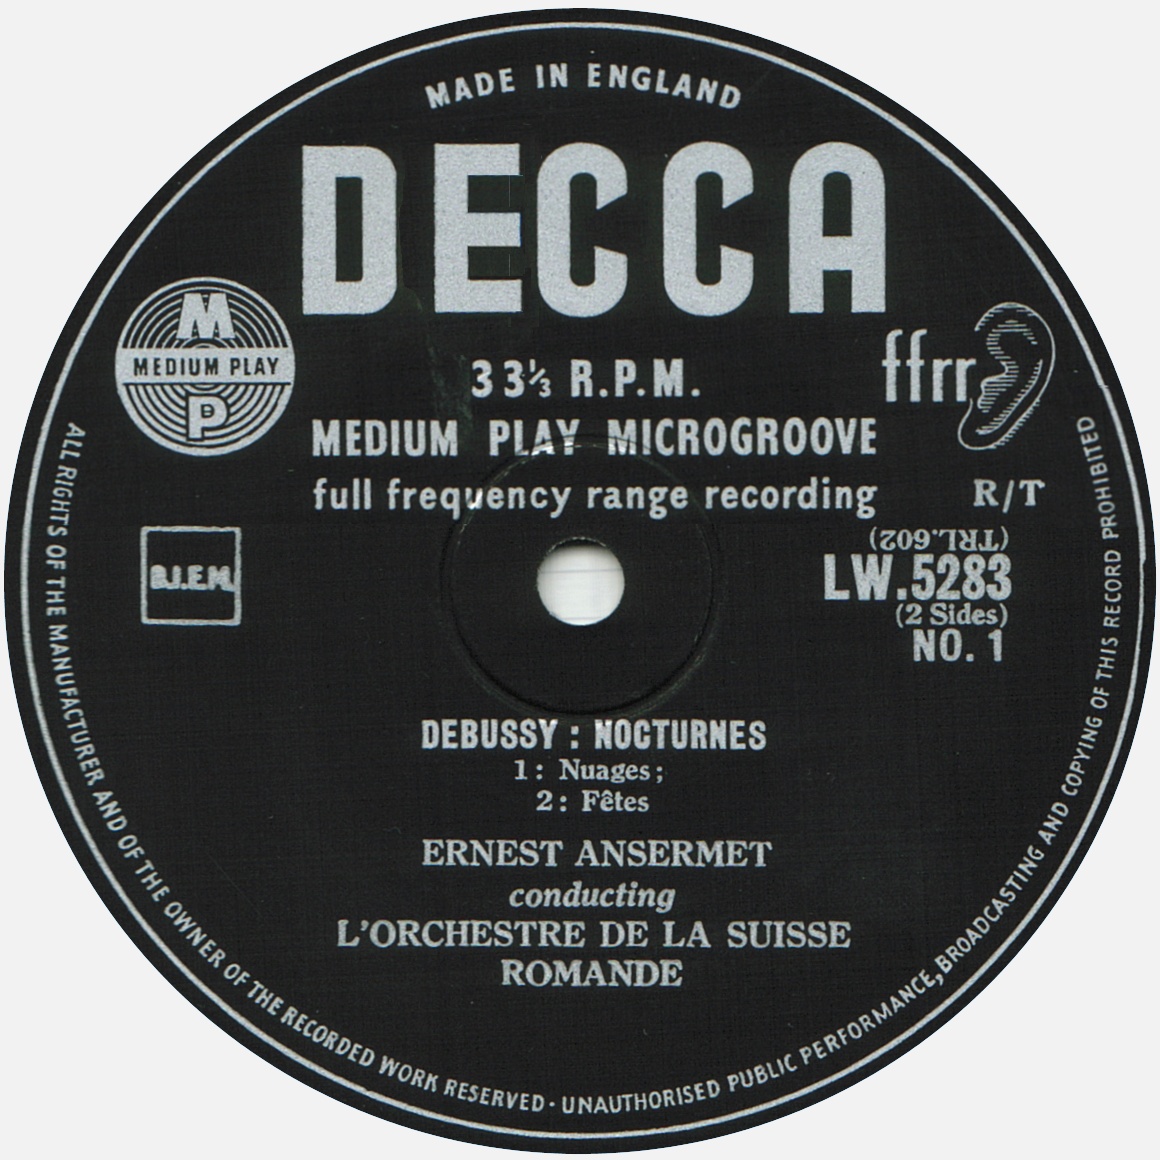 Disque Decca LW 5283, étiquette recto, cliquer pour une vue agrandie